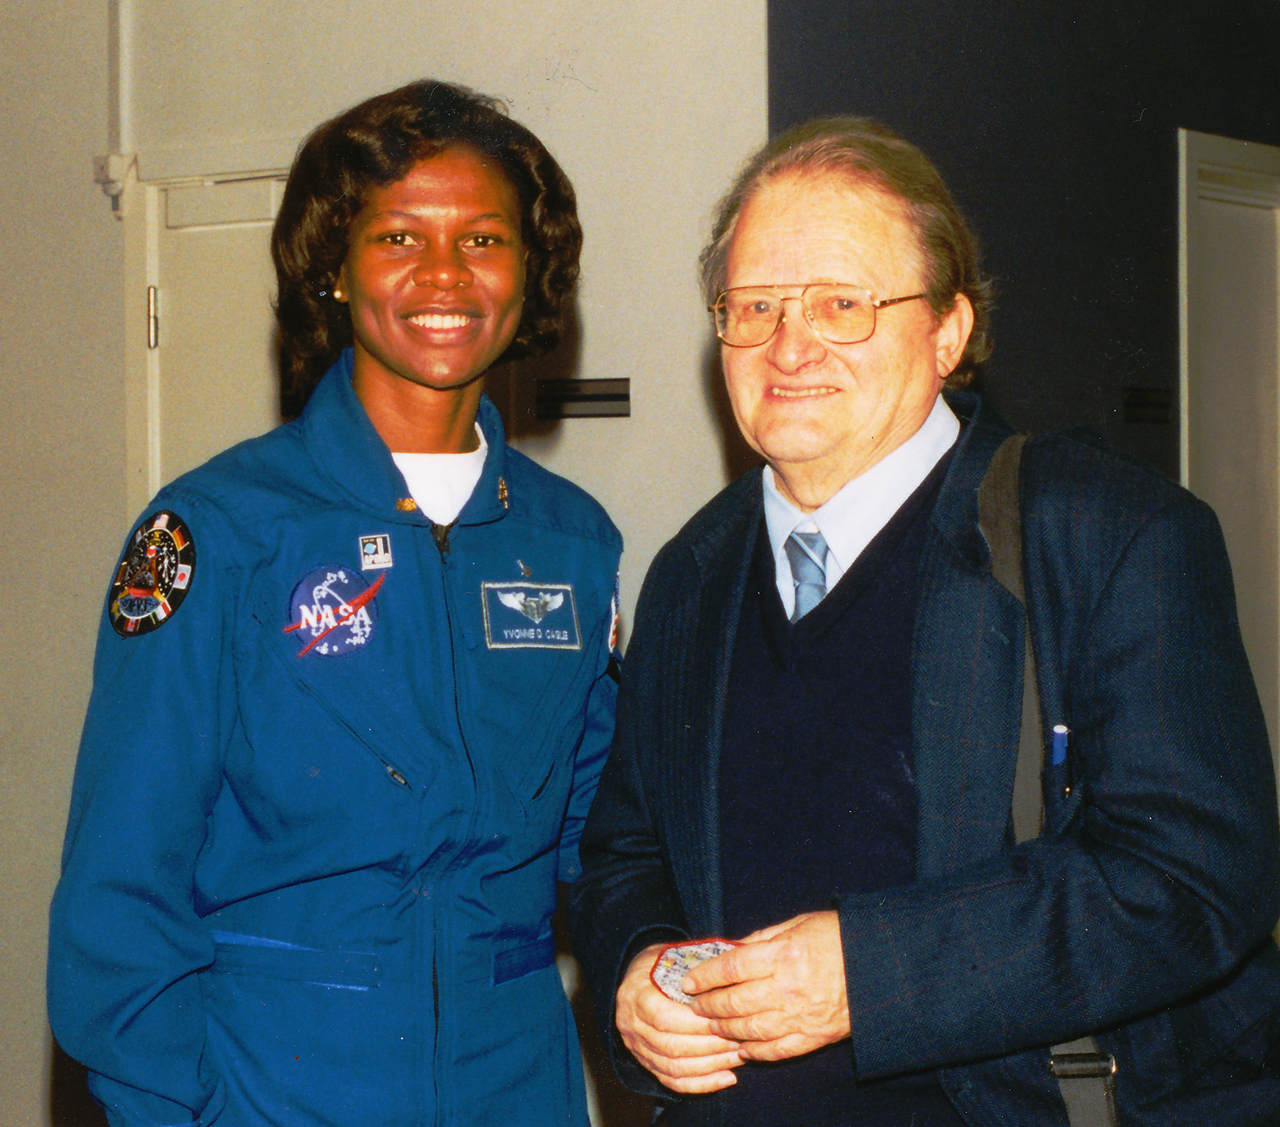 Jens Martin Knudsen and an American NASA astronaut